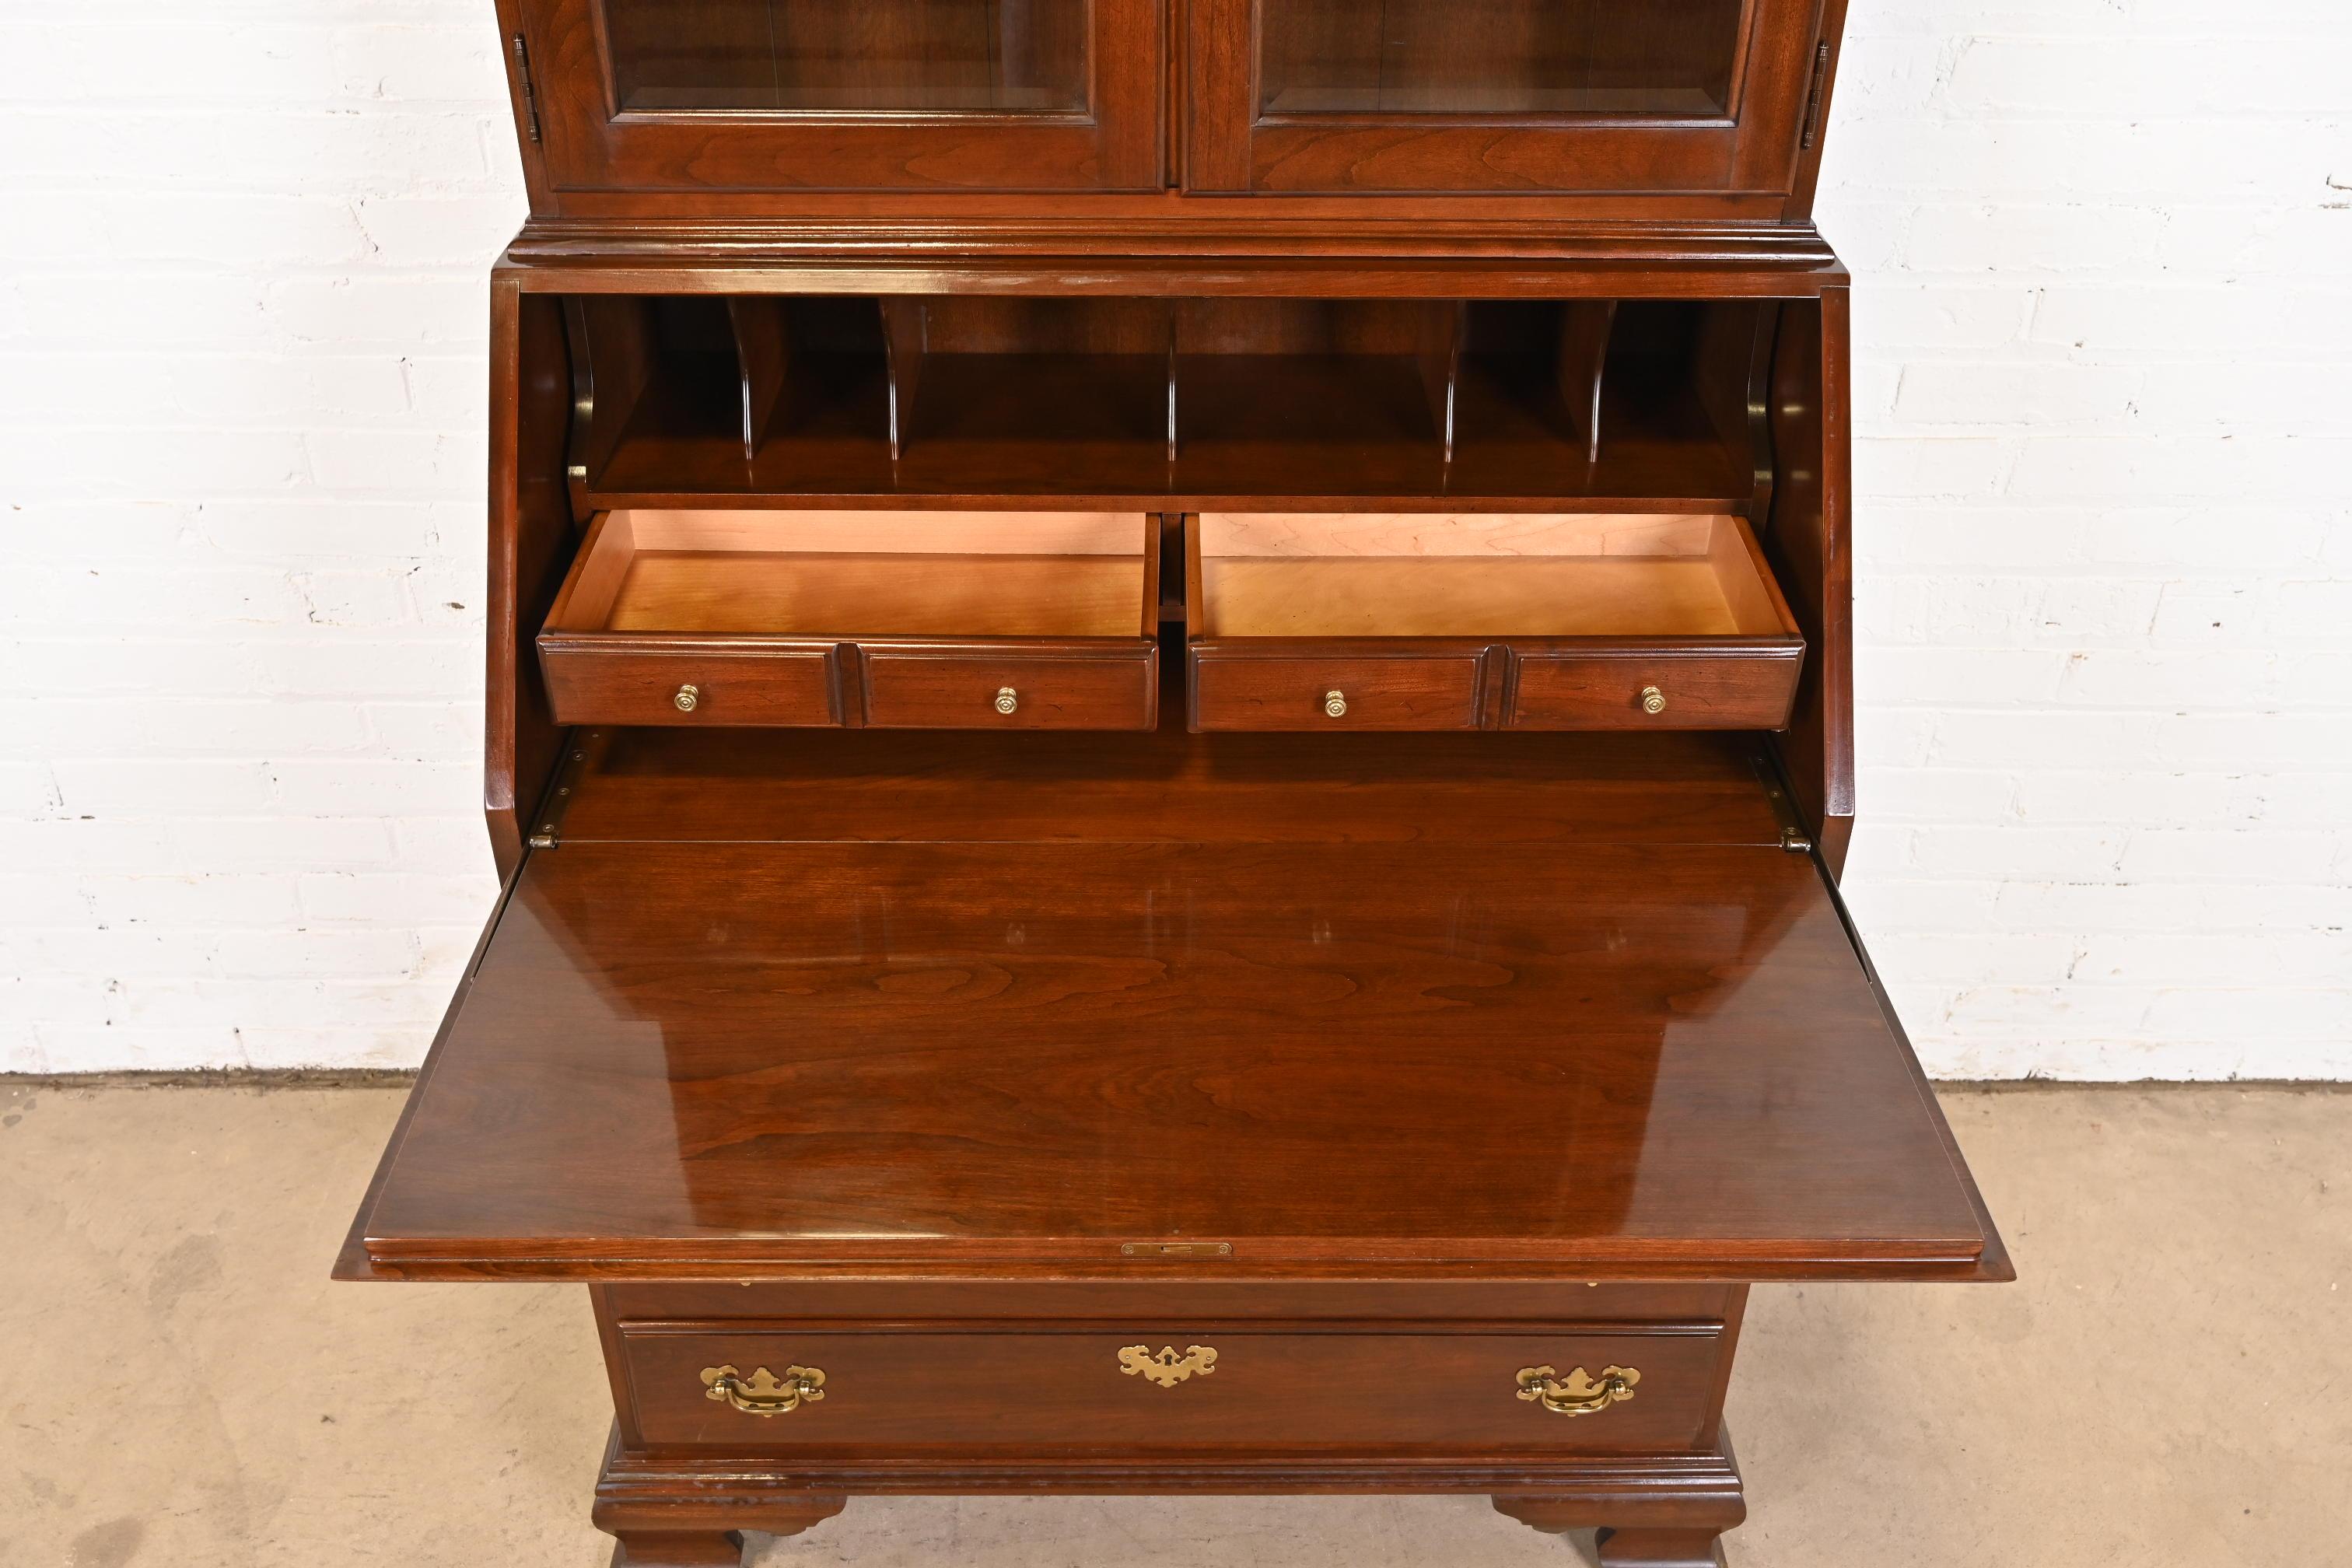 20ième siècle Georgian Cherry Wood Drop Front Secretary Desk With Bookcase Hutch (bureau à abattant en bois de cerisier géorgien avec huche de bibliothèque) en vente